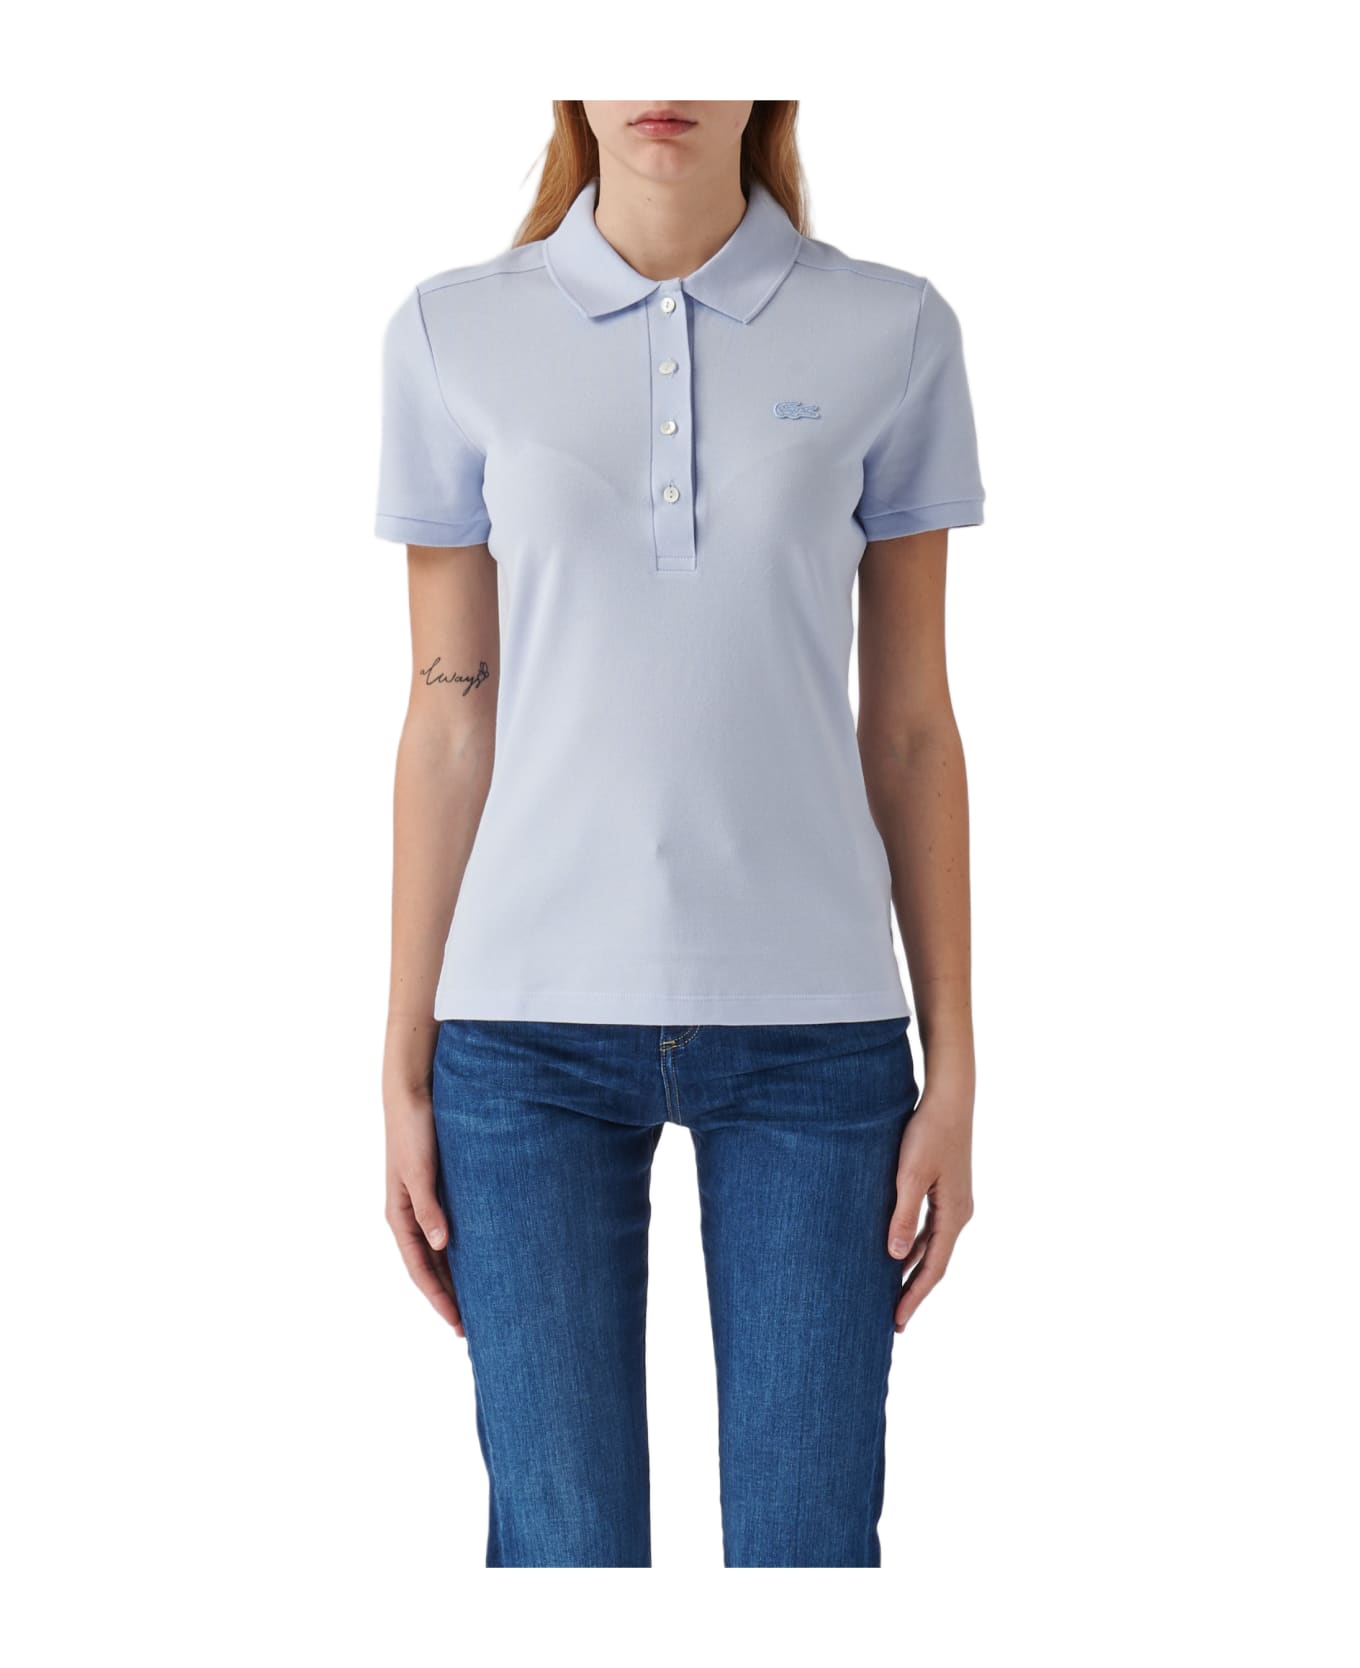 Lacoste Cotton T-shirt - CERULEO